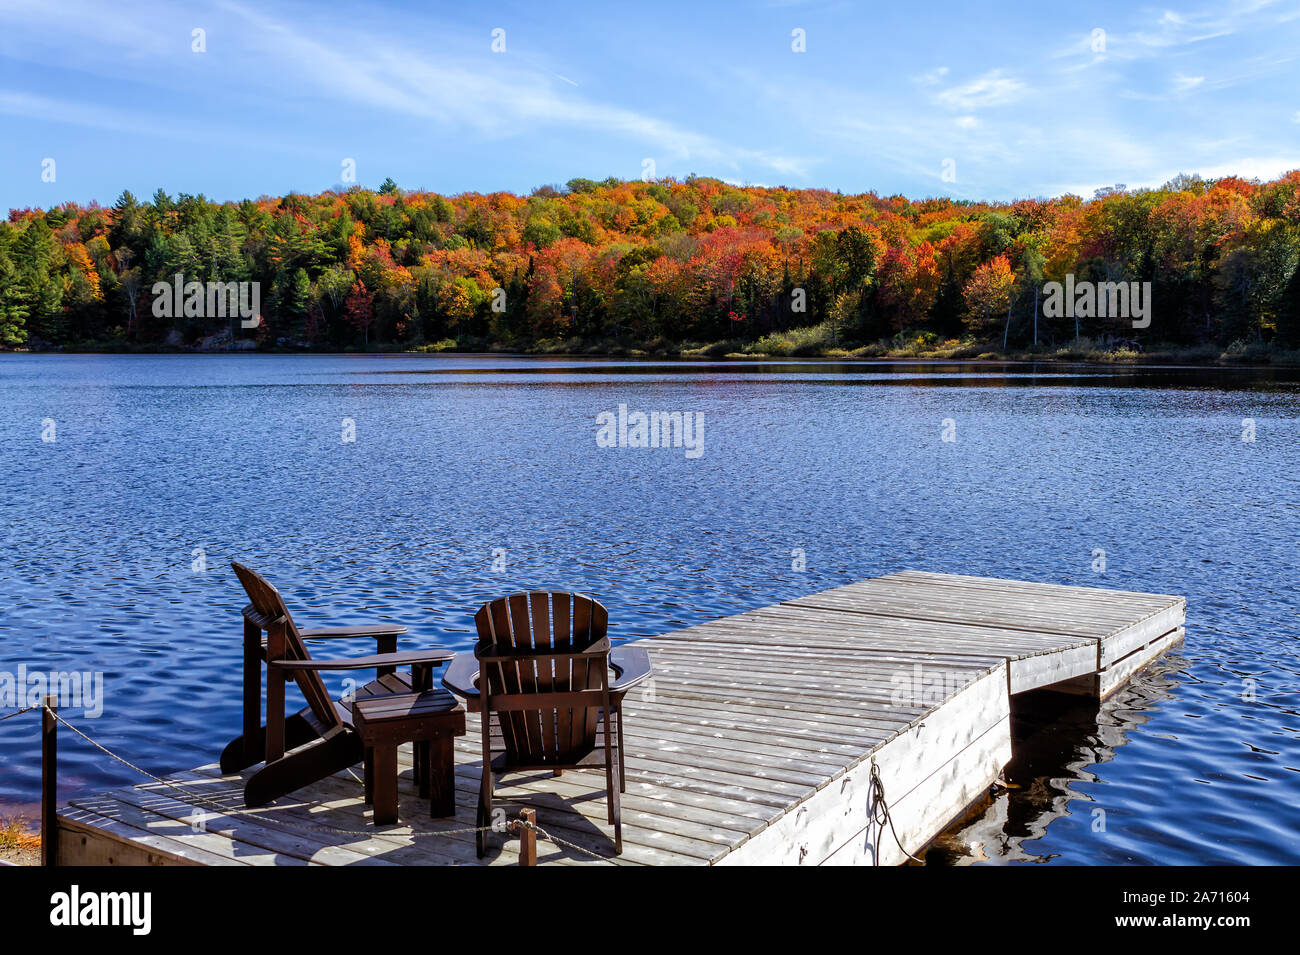 Deux chaises Muskoka assis sur un quai en bois face à un lac dans un quartier calme de la saison d'automne dans une journée ensoleillée Banque D'Images